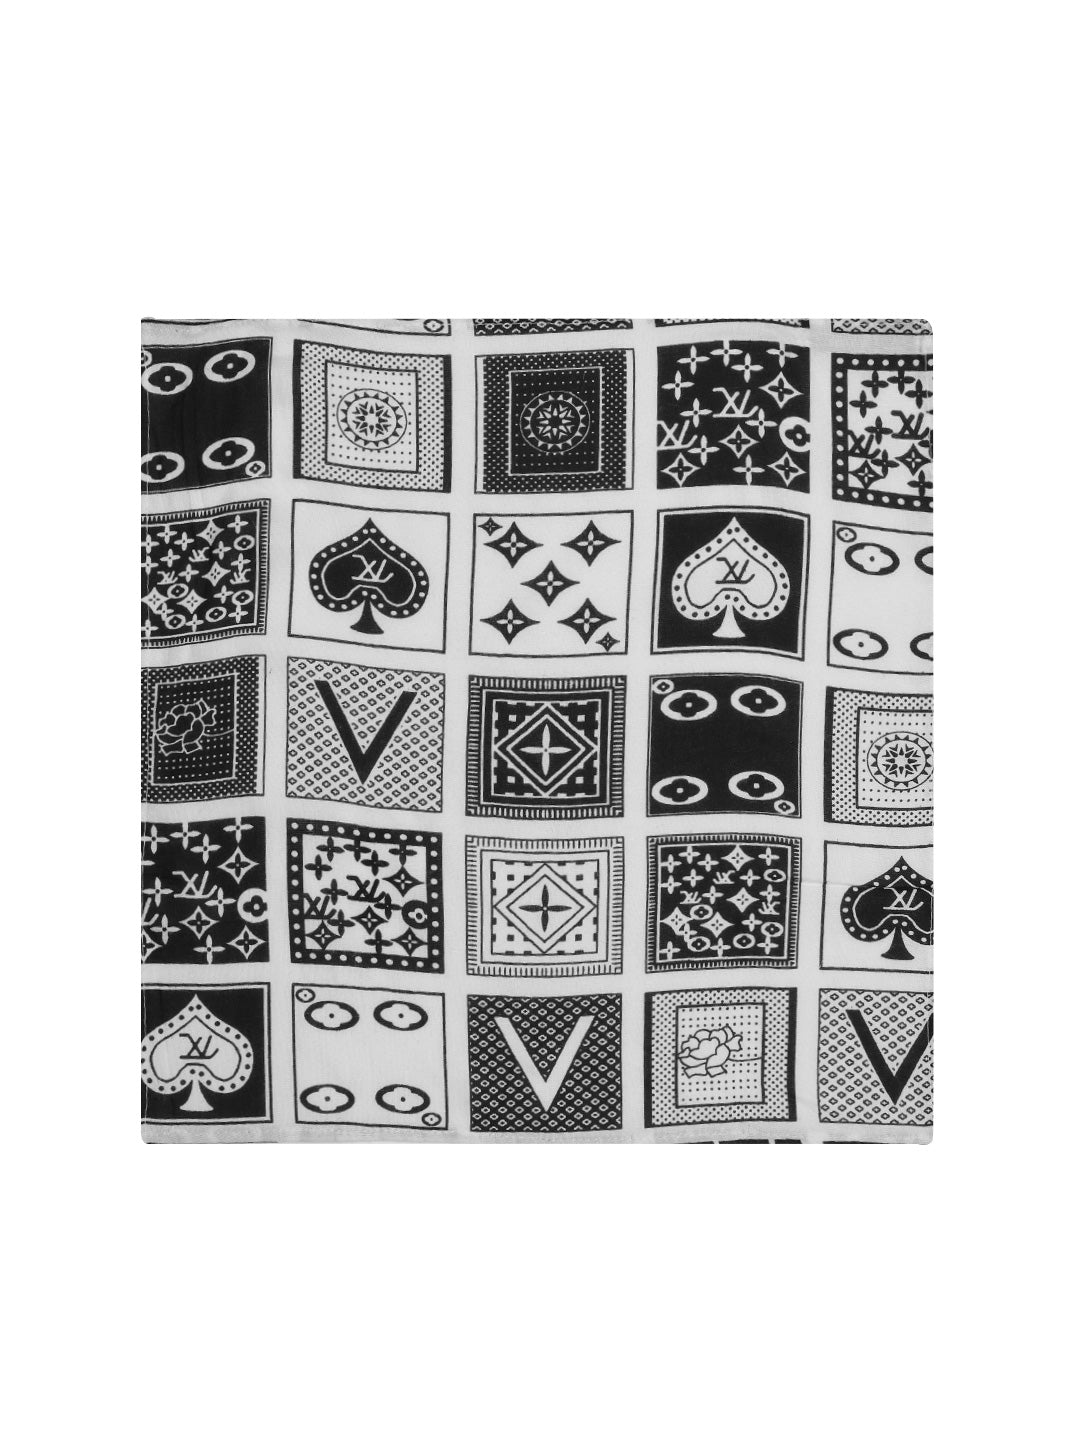 pocket square for black suit, pocket square designs